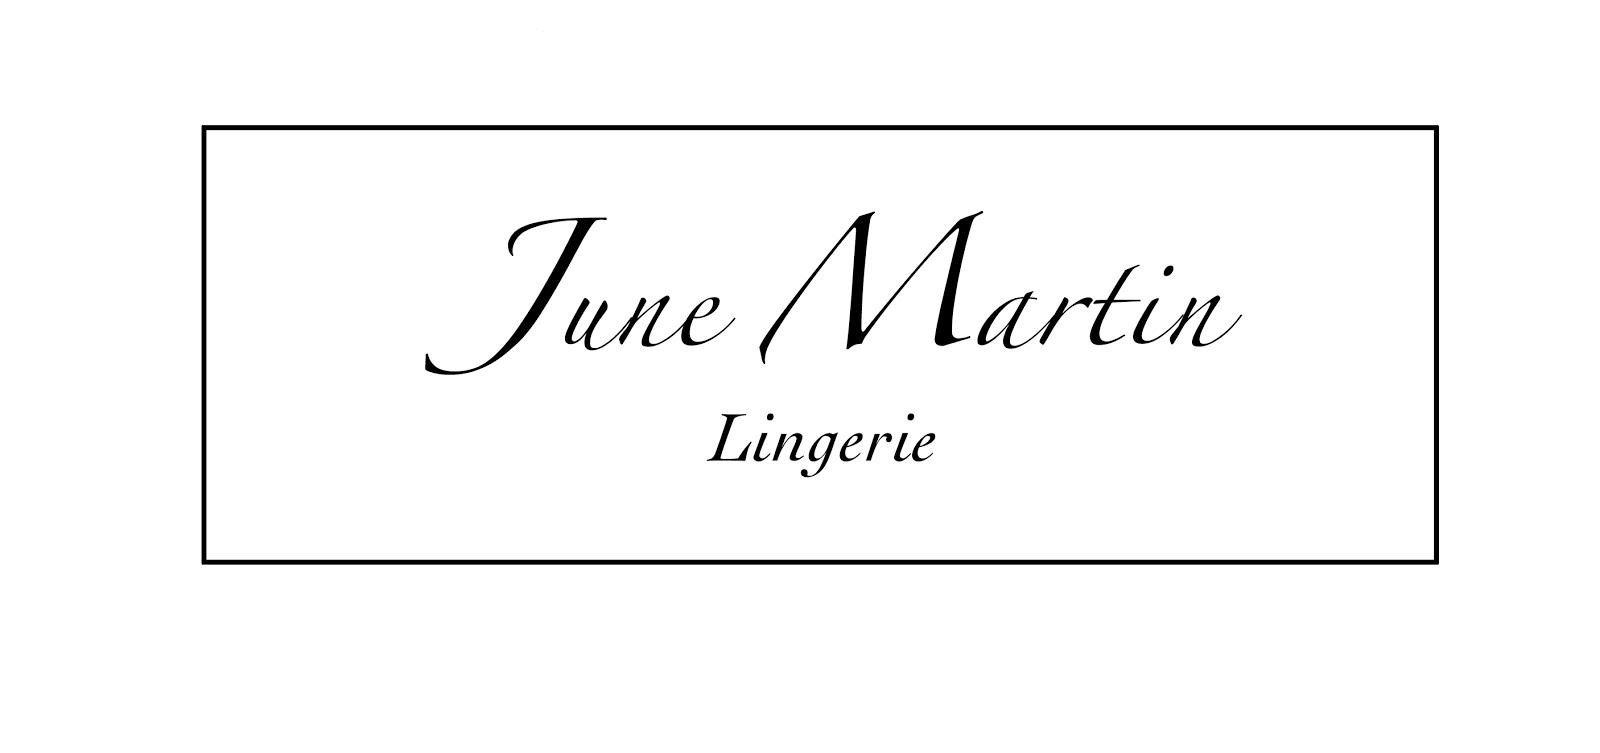 June Martin Lingerie